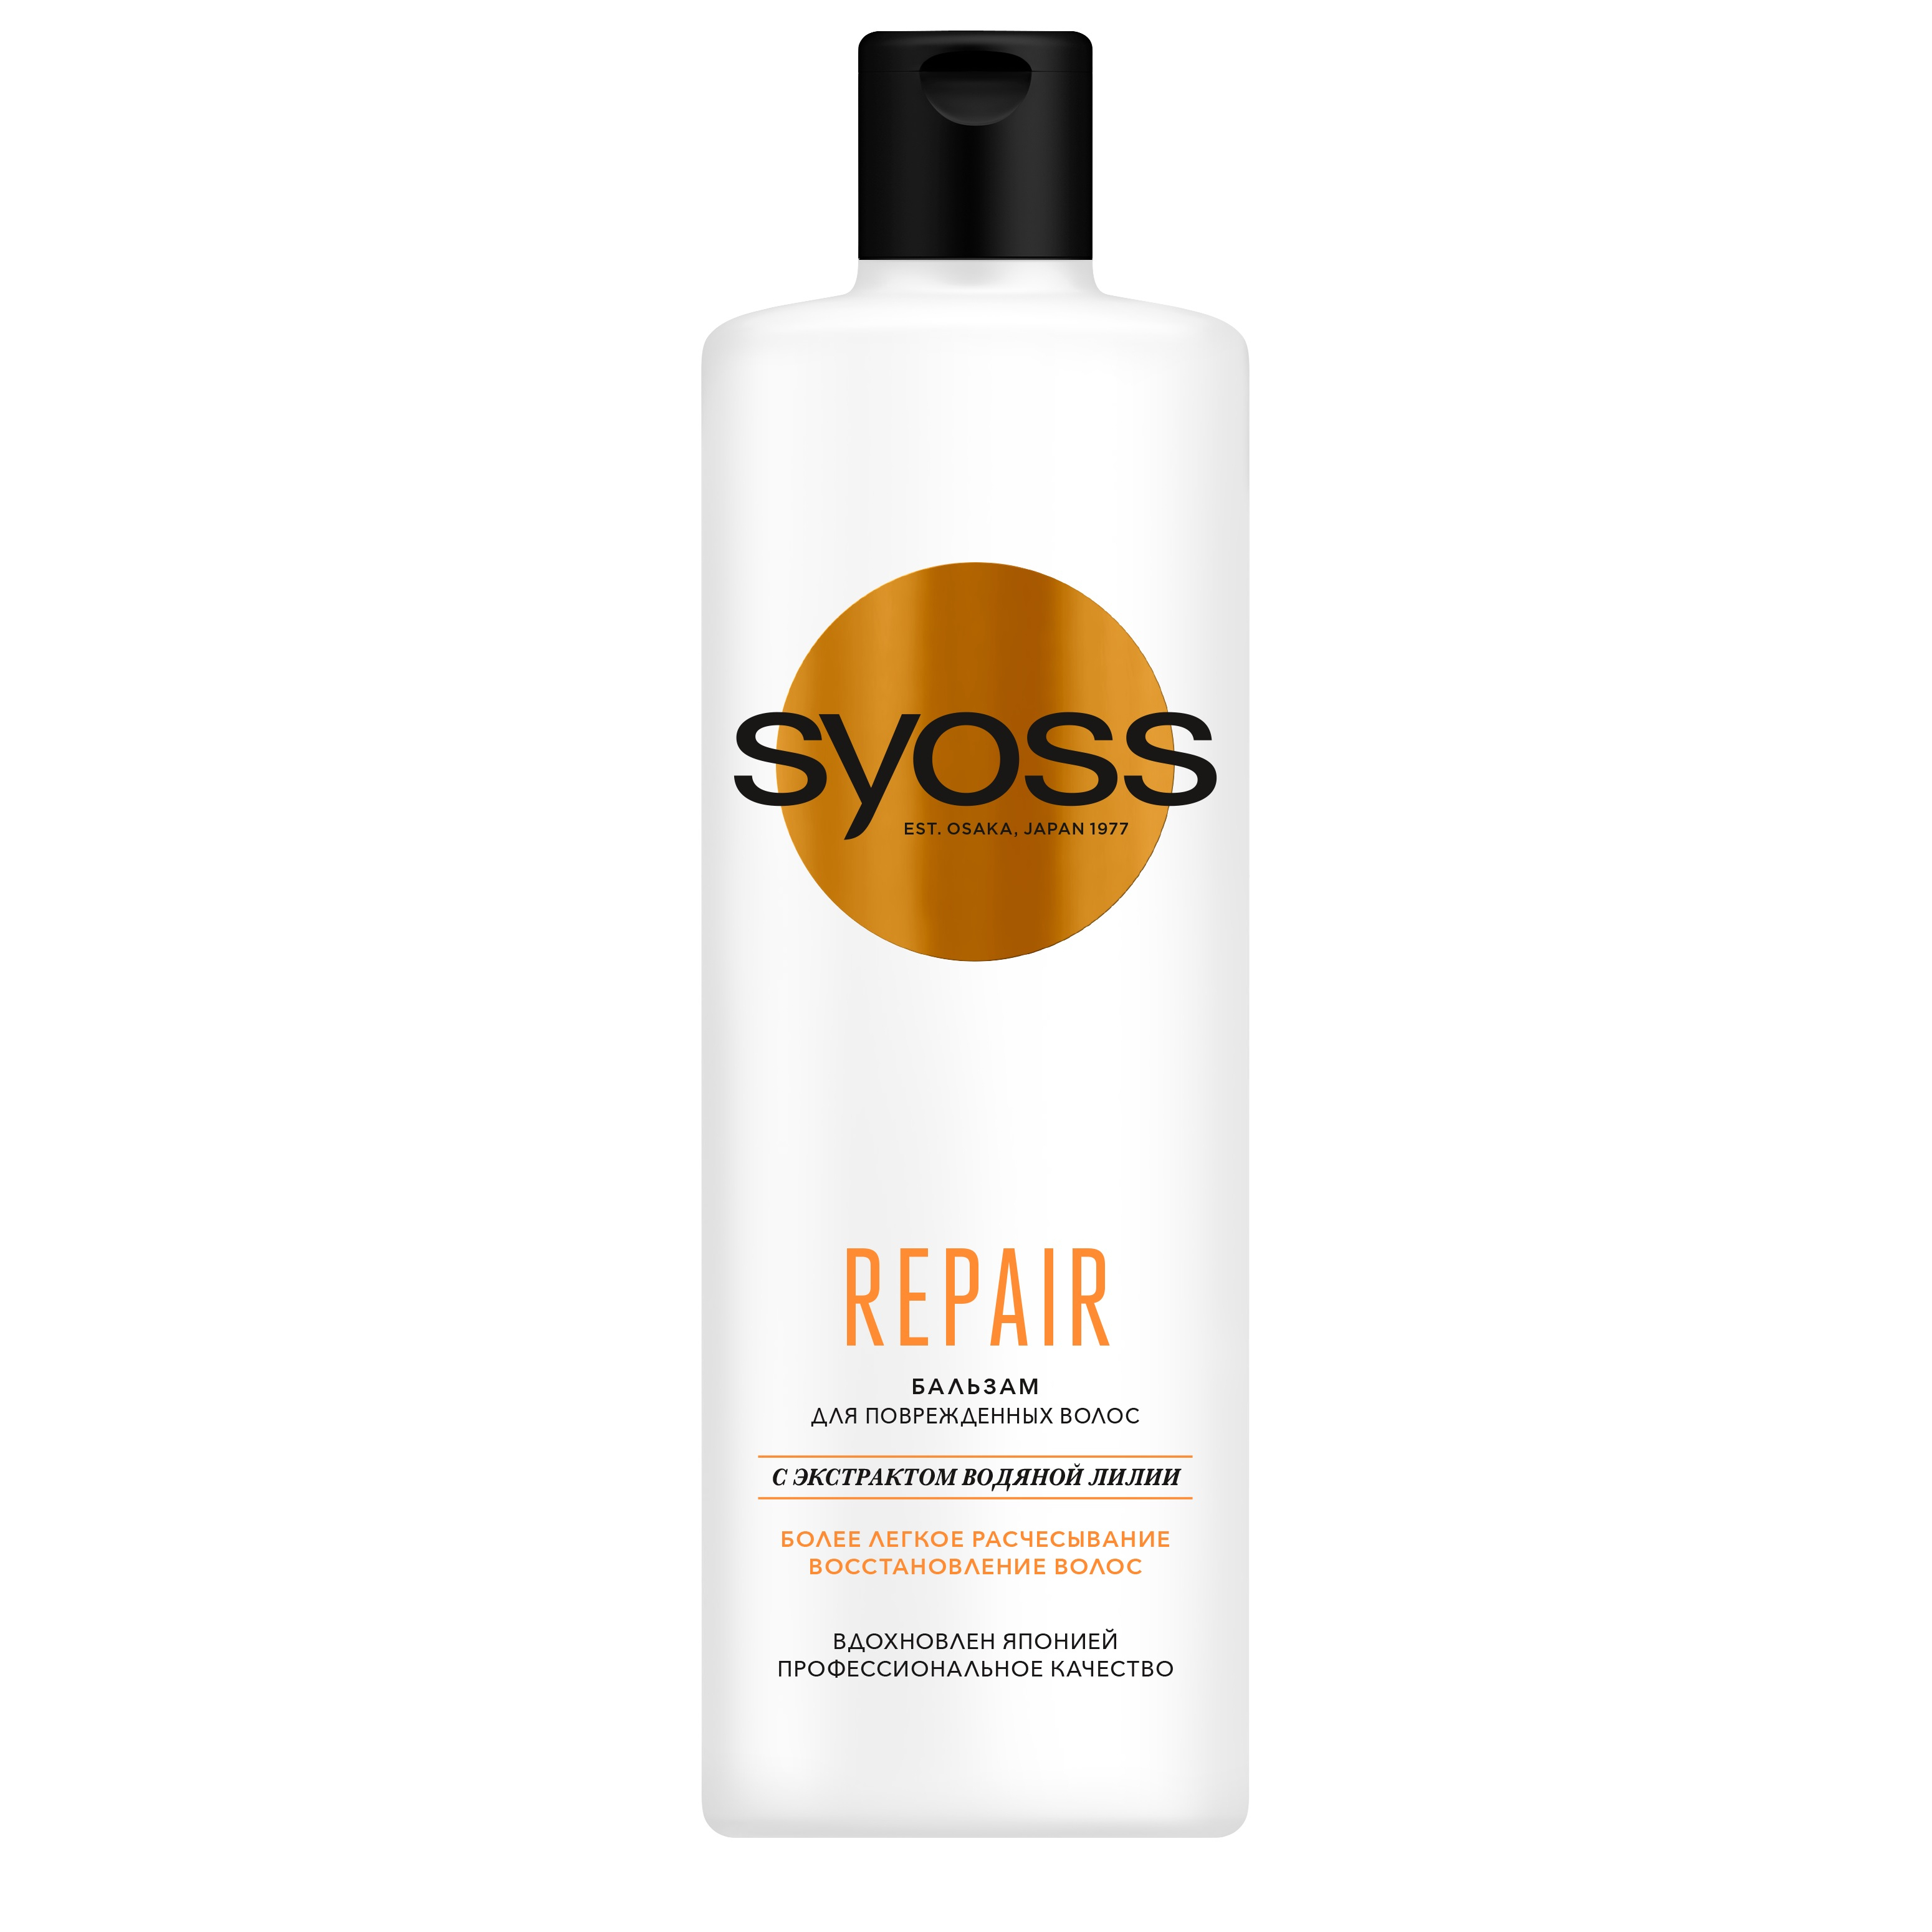 Бальзам для волос Syoss Repair восстанавливающий 450 мл lux color бальзам оттеночный для волос тон 08 молочный шоколад 100 мл